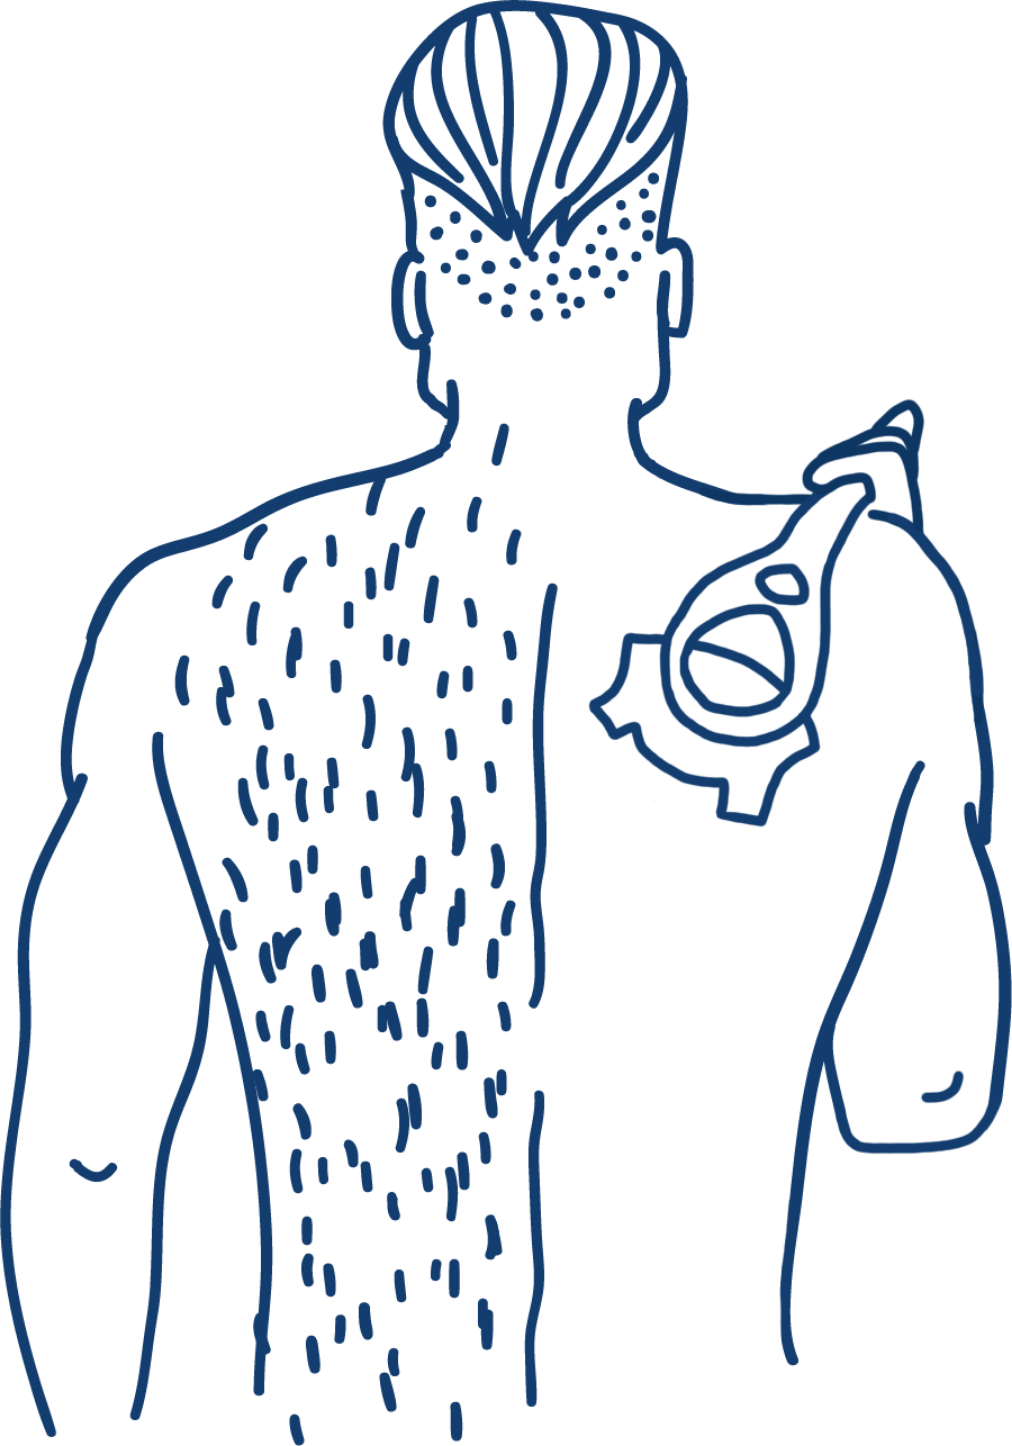 men's back hair shaver